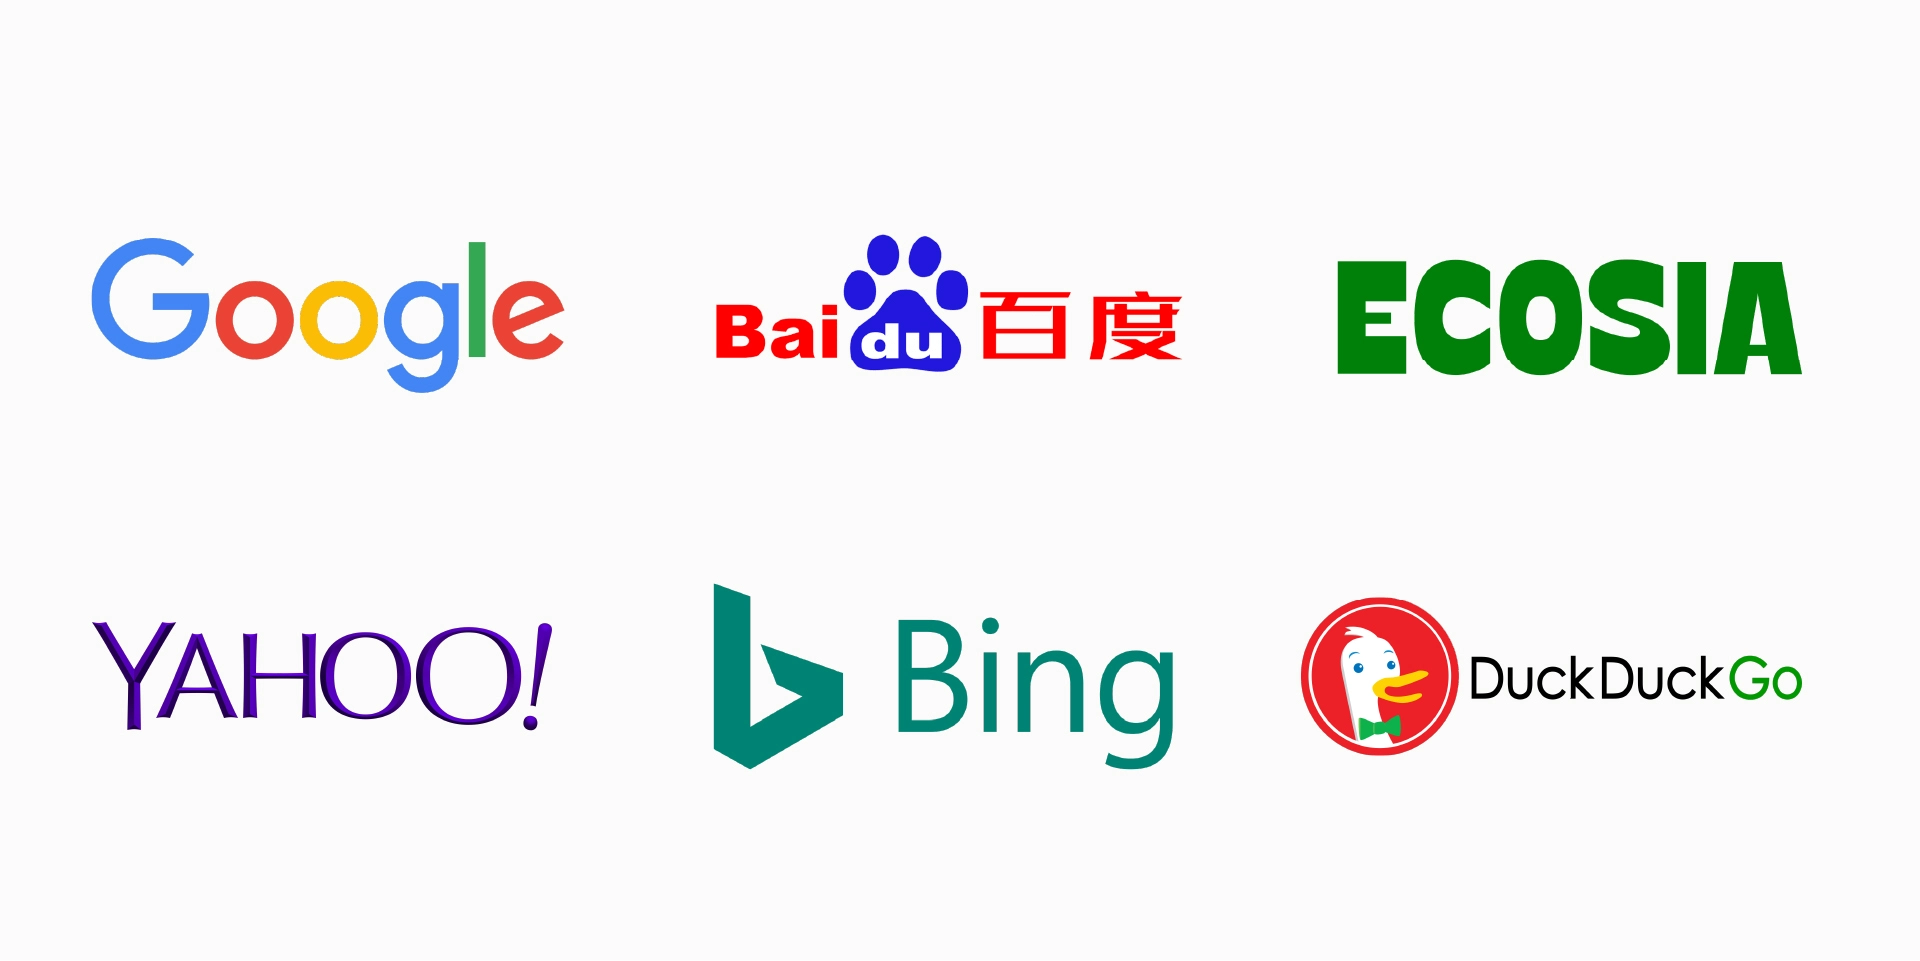 Buscadores alternativos a Google: Baidu, Bing, Yahoo, Duckduckgo y ecosia entre otros.